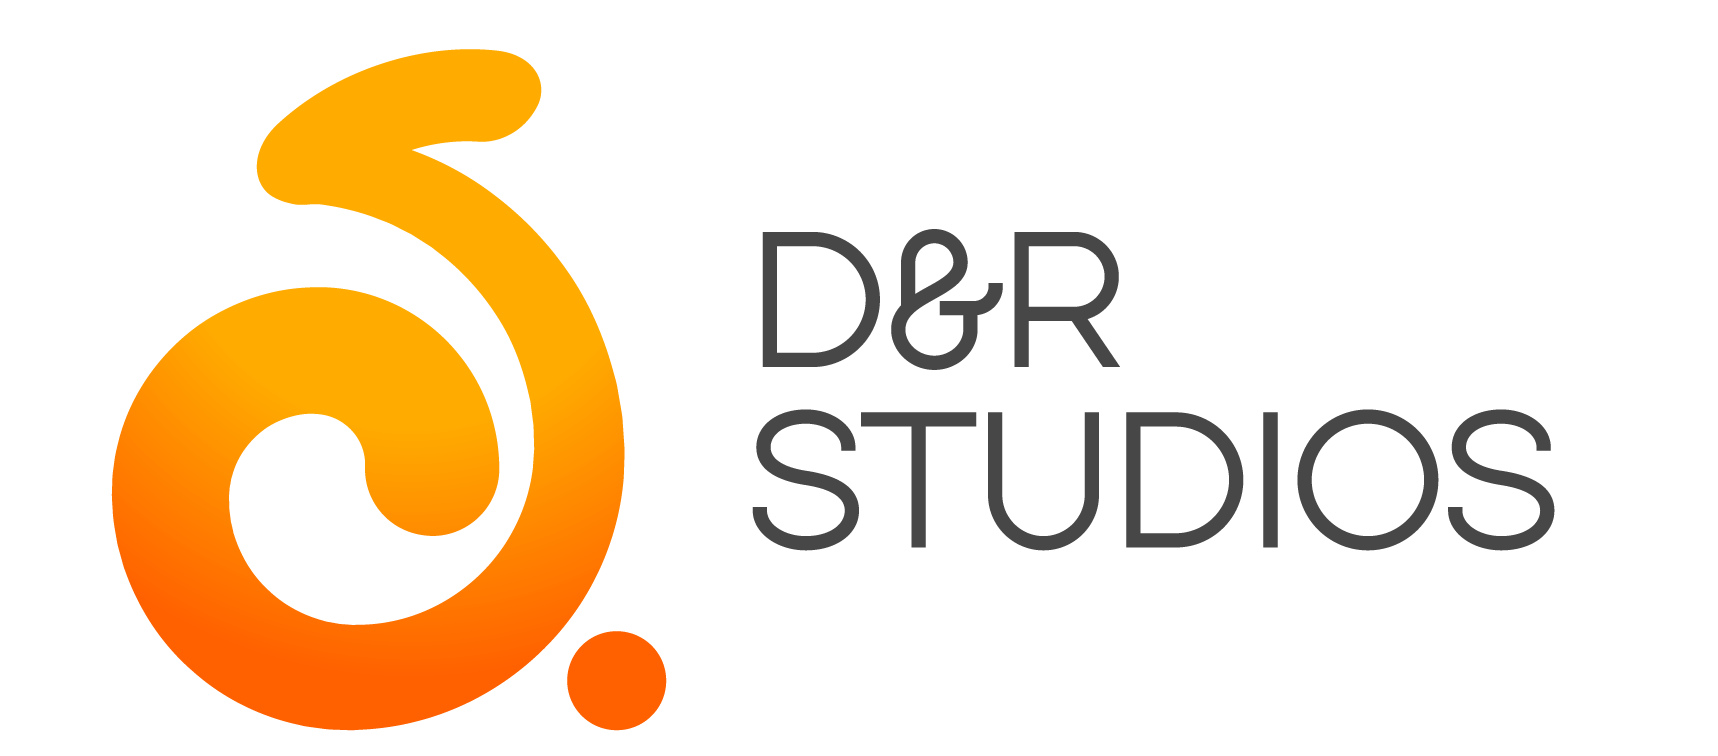 D&R Studios